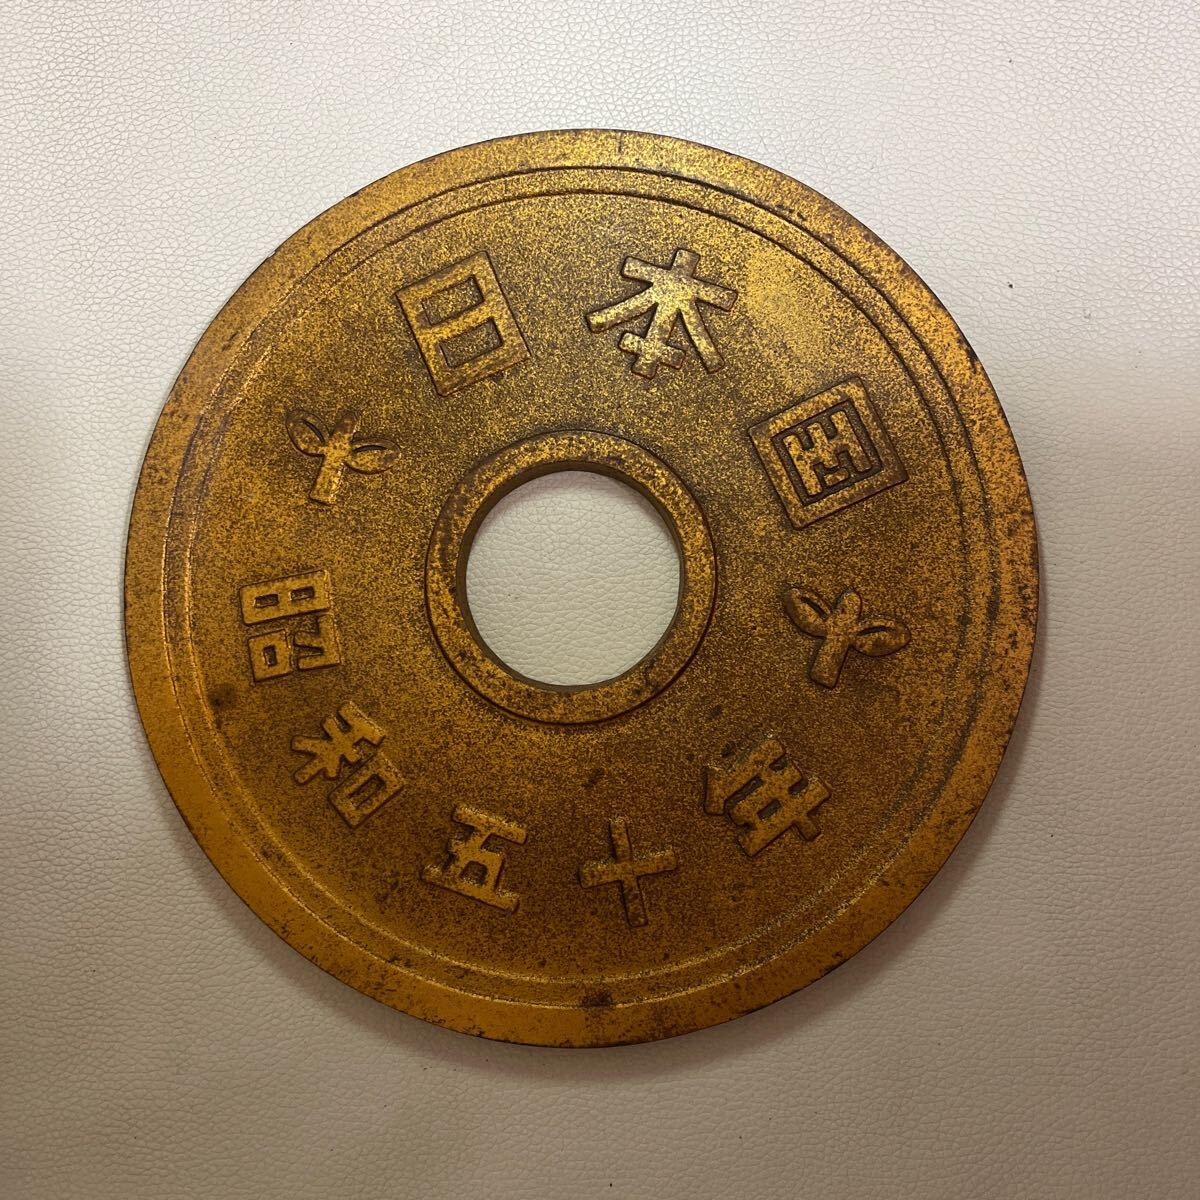 五円玉 置物 特大5円玉 直径約21.3㎝ 硬貨 金運 オブジェ 和風縁起物 レトロの画像2